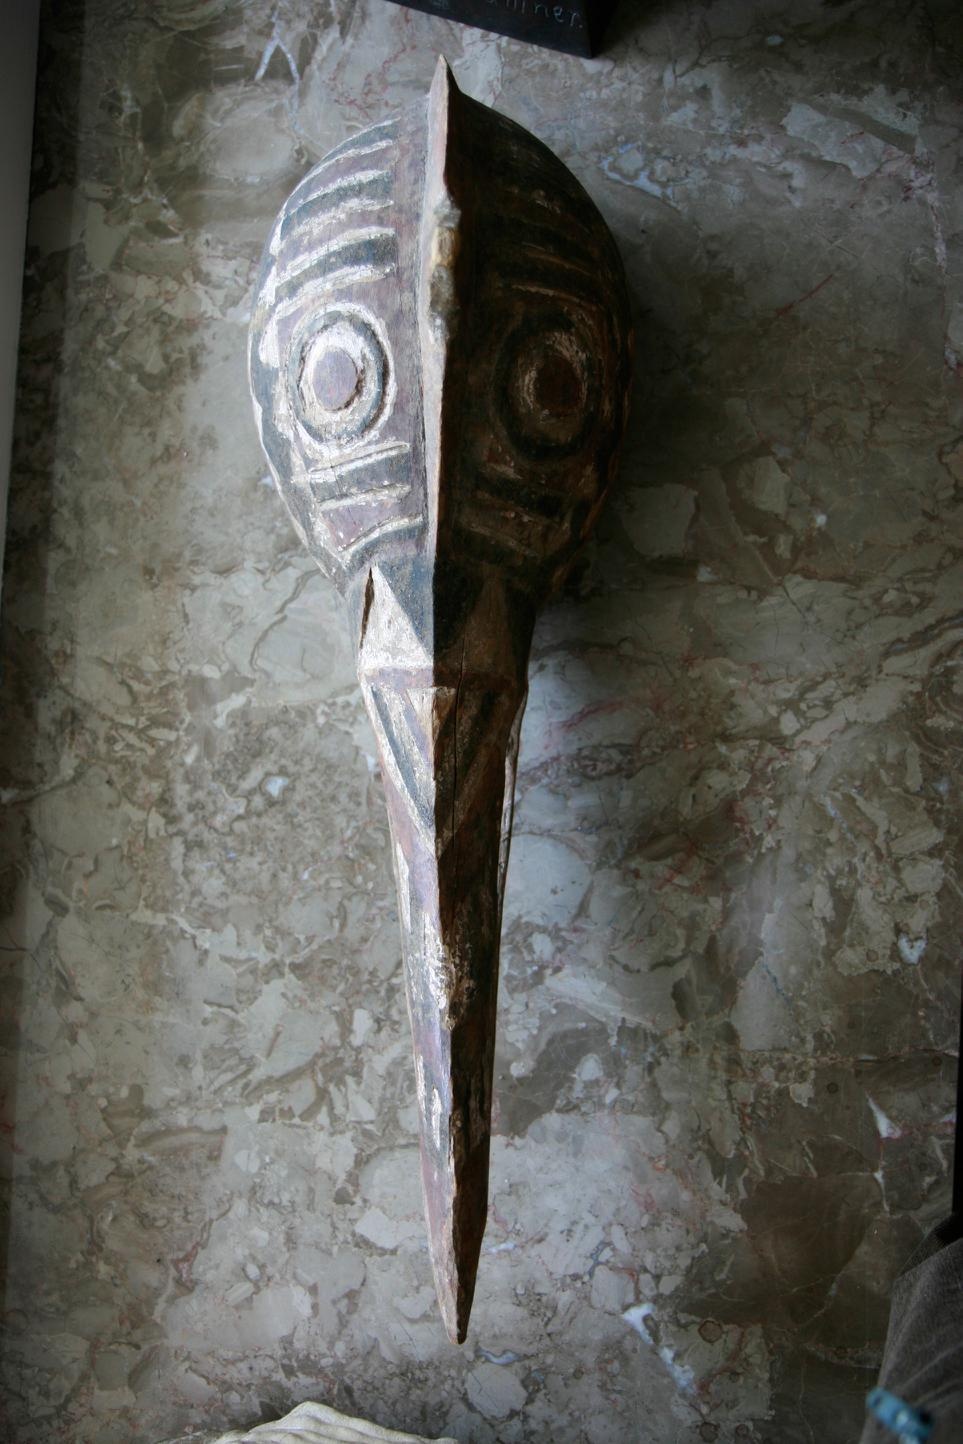 Afrikanische Ritualmaske: Bild im Kult keine Kunst, Bild: Lustmarsch, II.6, S. 201 © QART, Stefanie Hierholzer und Ulrich Klaus.